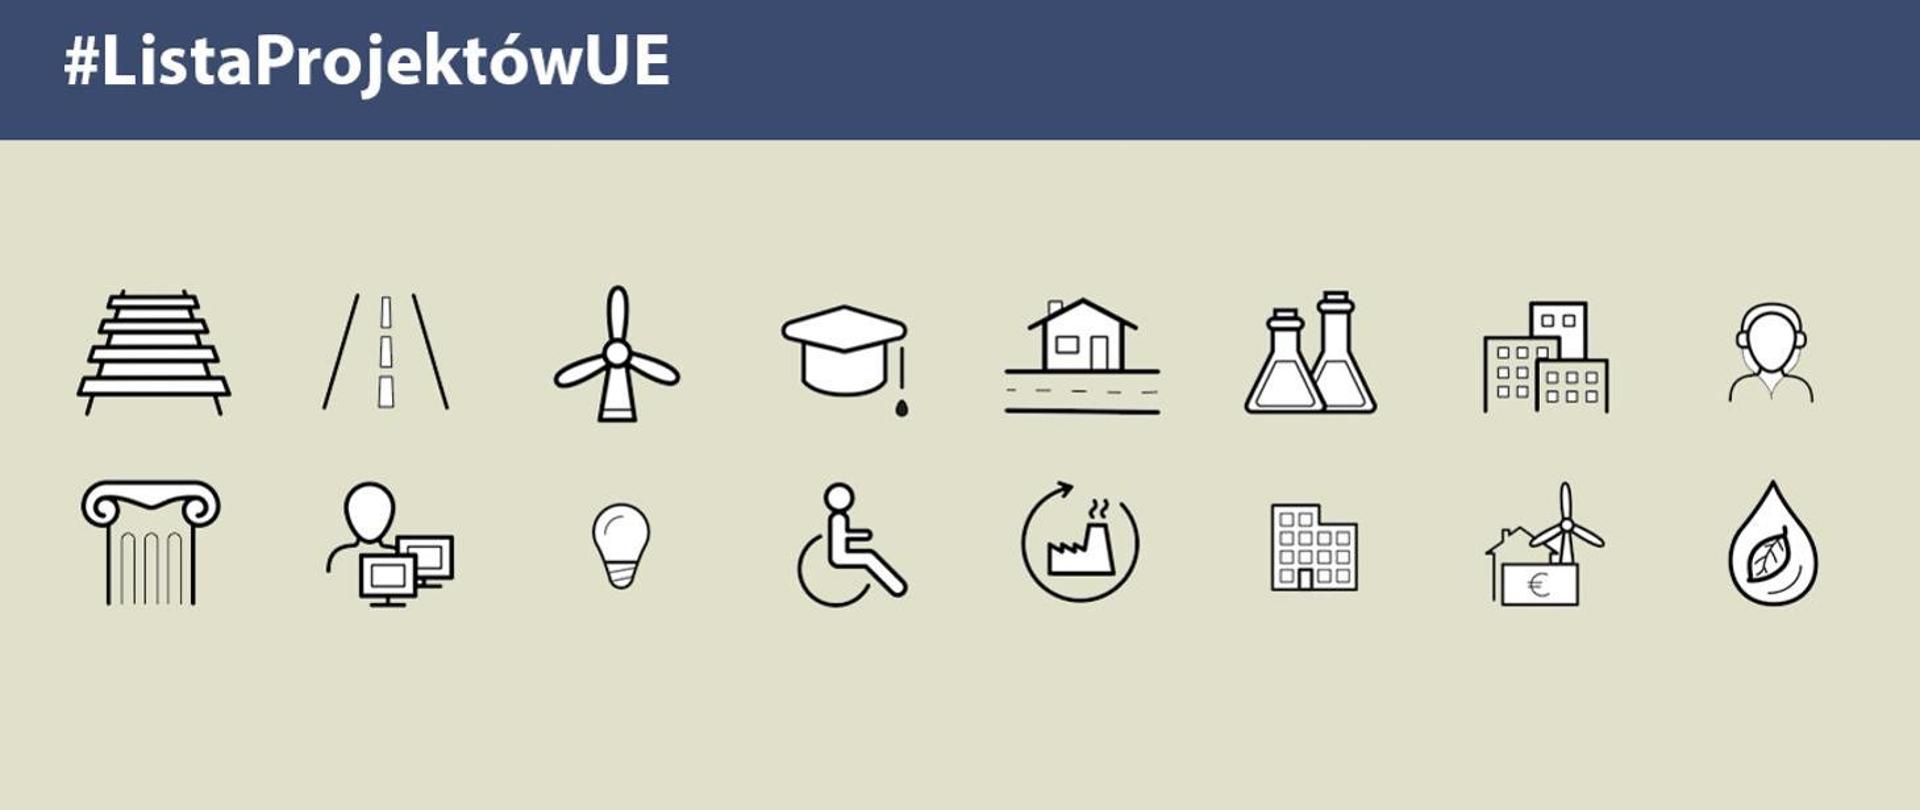 Lista projektów UE - grafika przedstawiająca ikony obrazujące projekty finansowane z Funduszy Europejskich